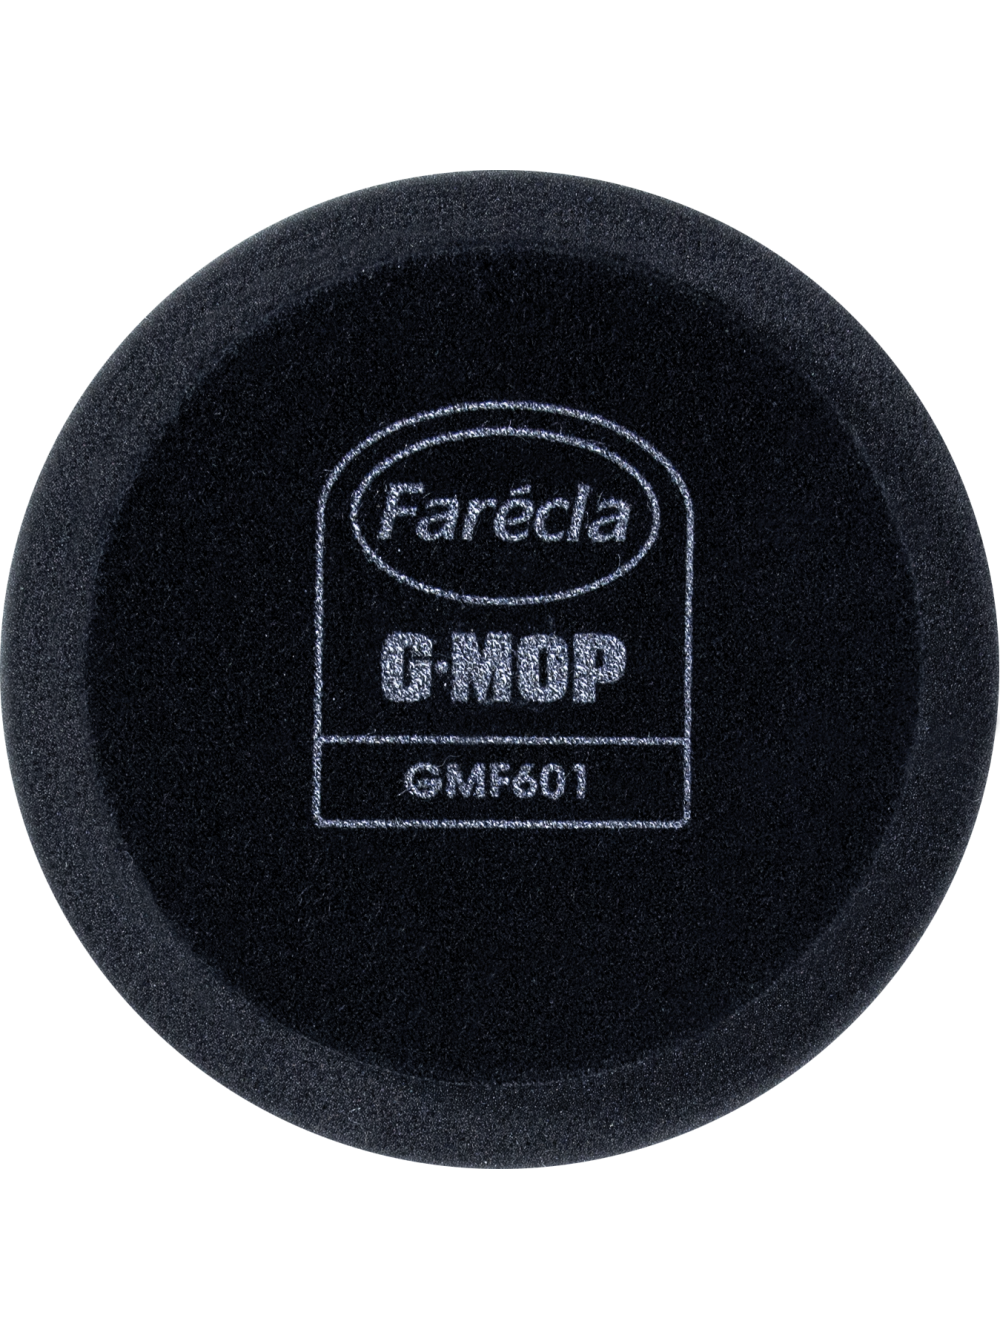 G Mop 8" Finishing Foam ЧЕРНЫЙ Полировальник для финишной пасты, Farecla GMF801